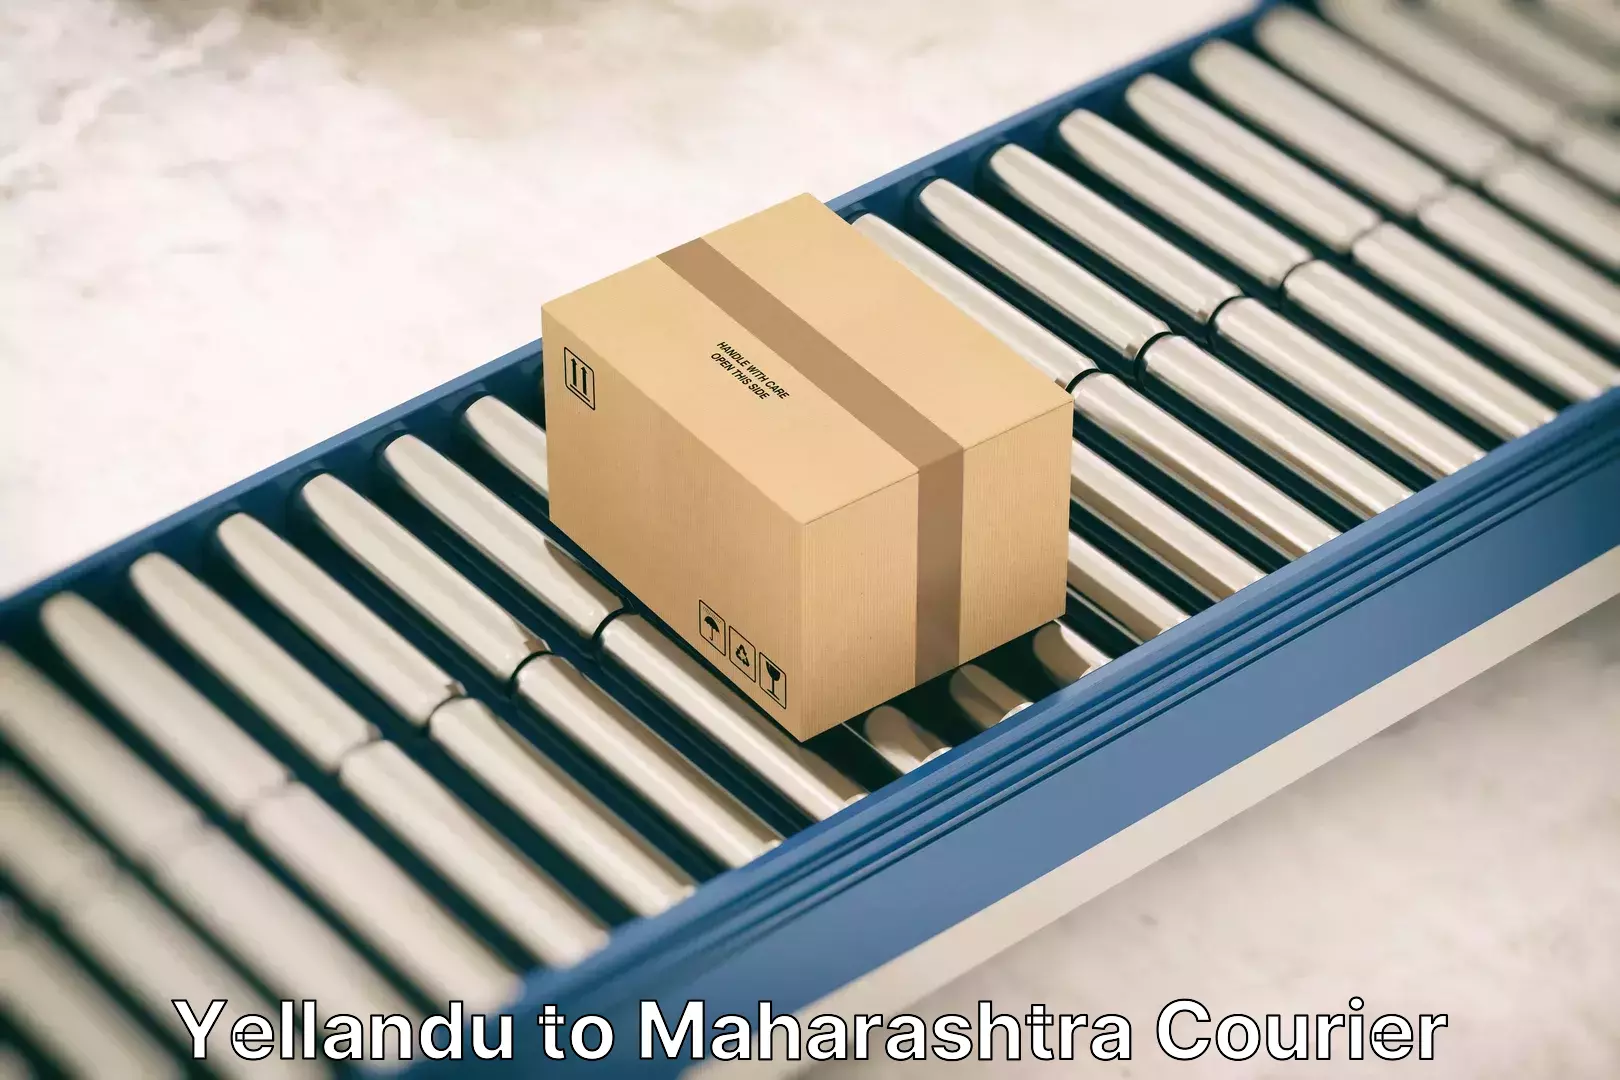 Home goods moving company Yellandu to Maharashtra